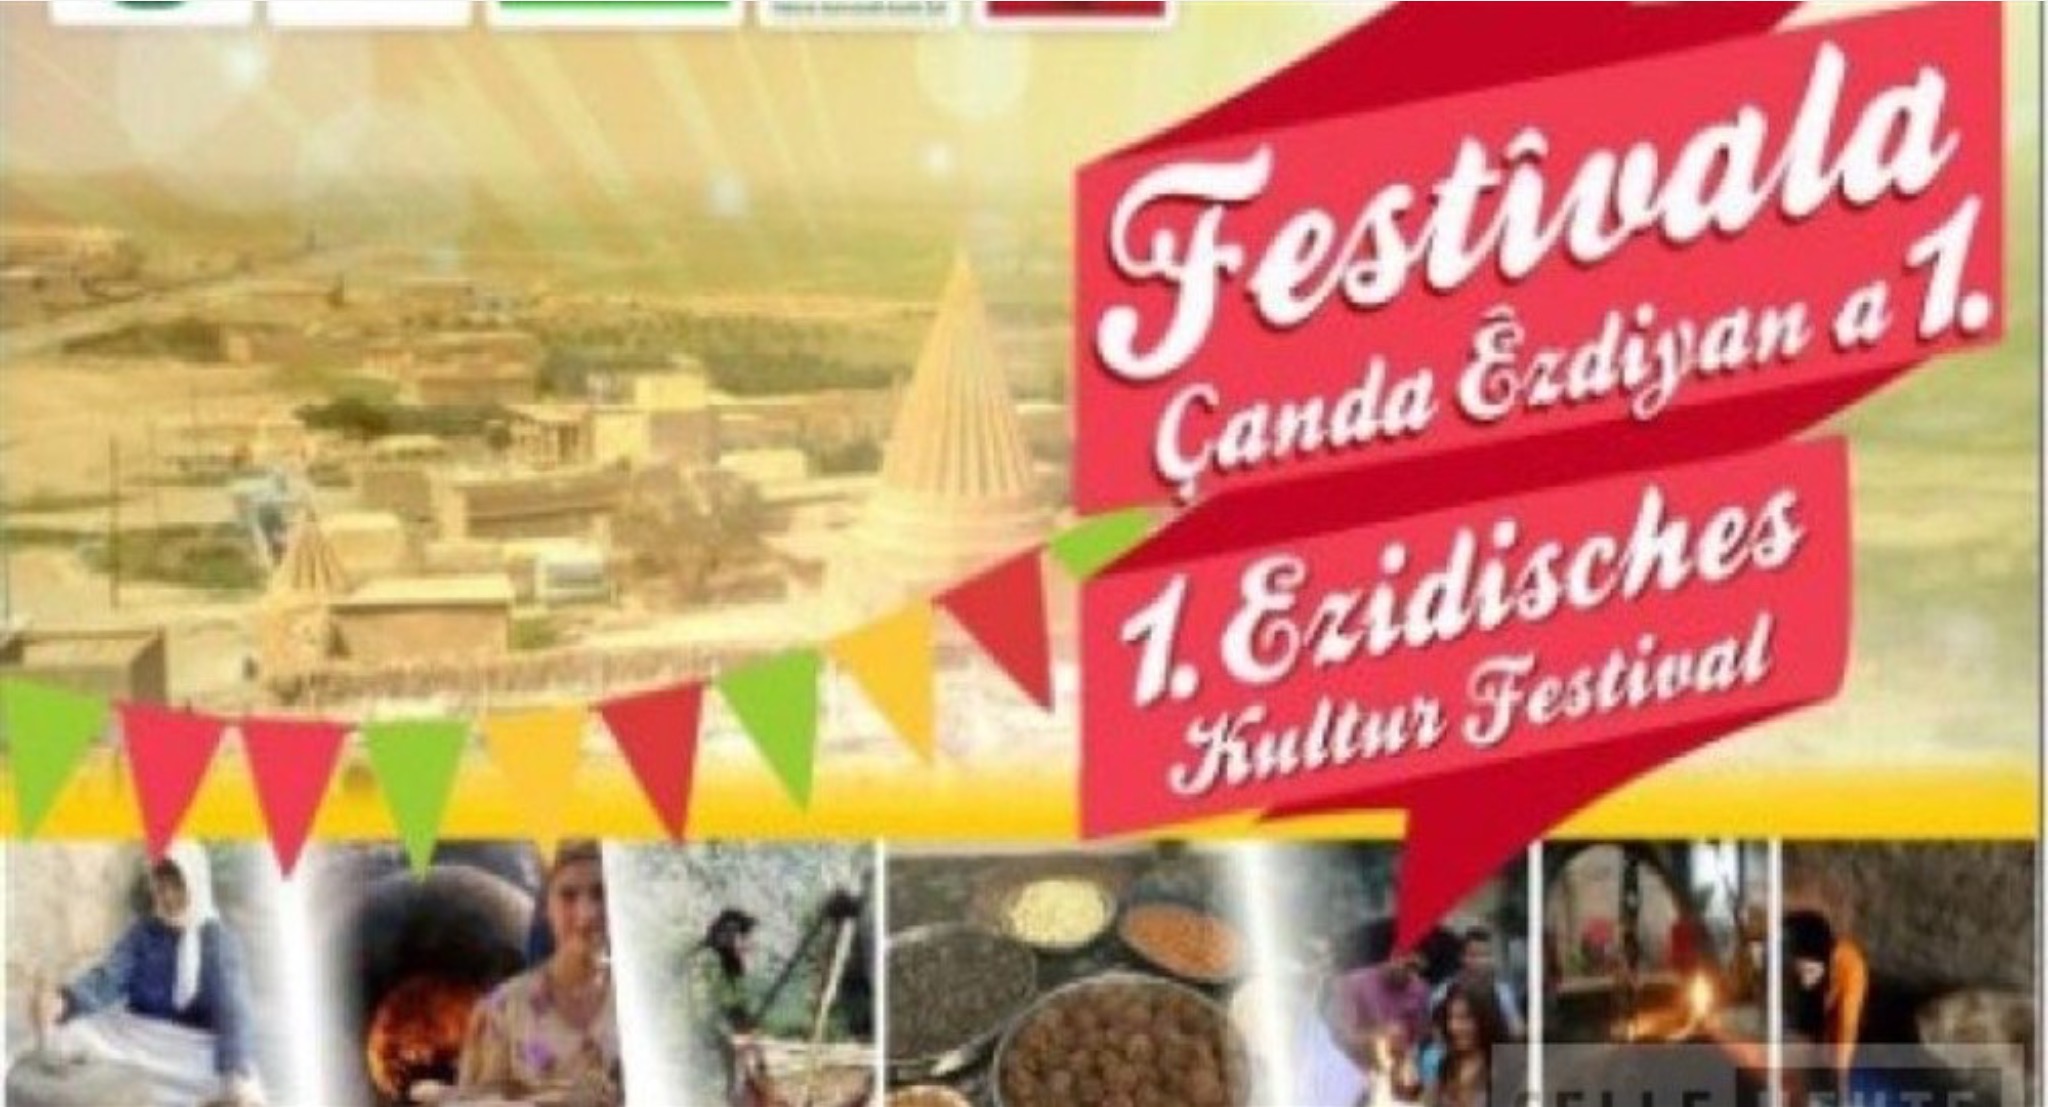 Германия запретила культурный фестиваль езидов в Целле